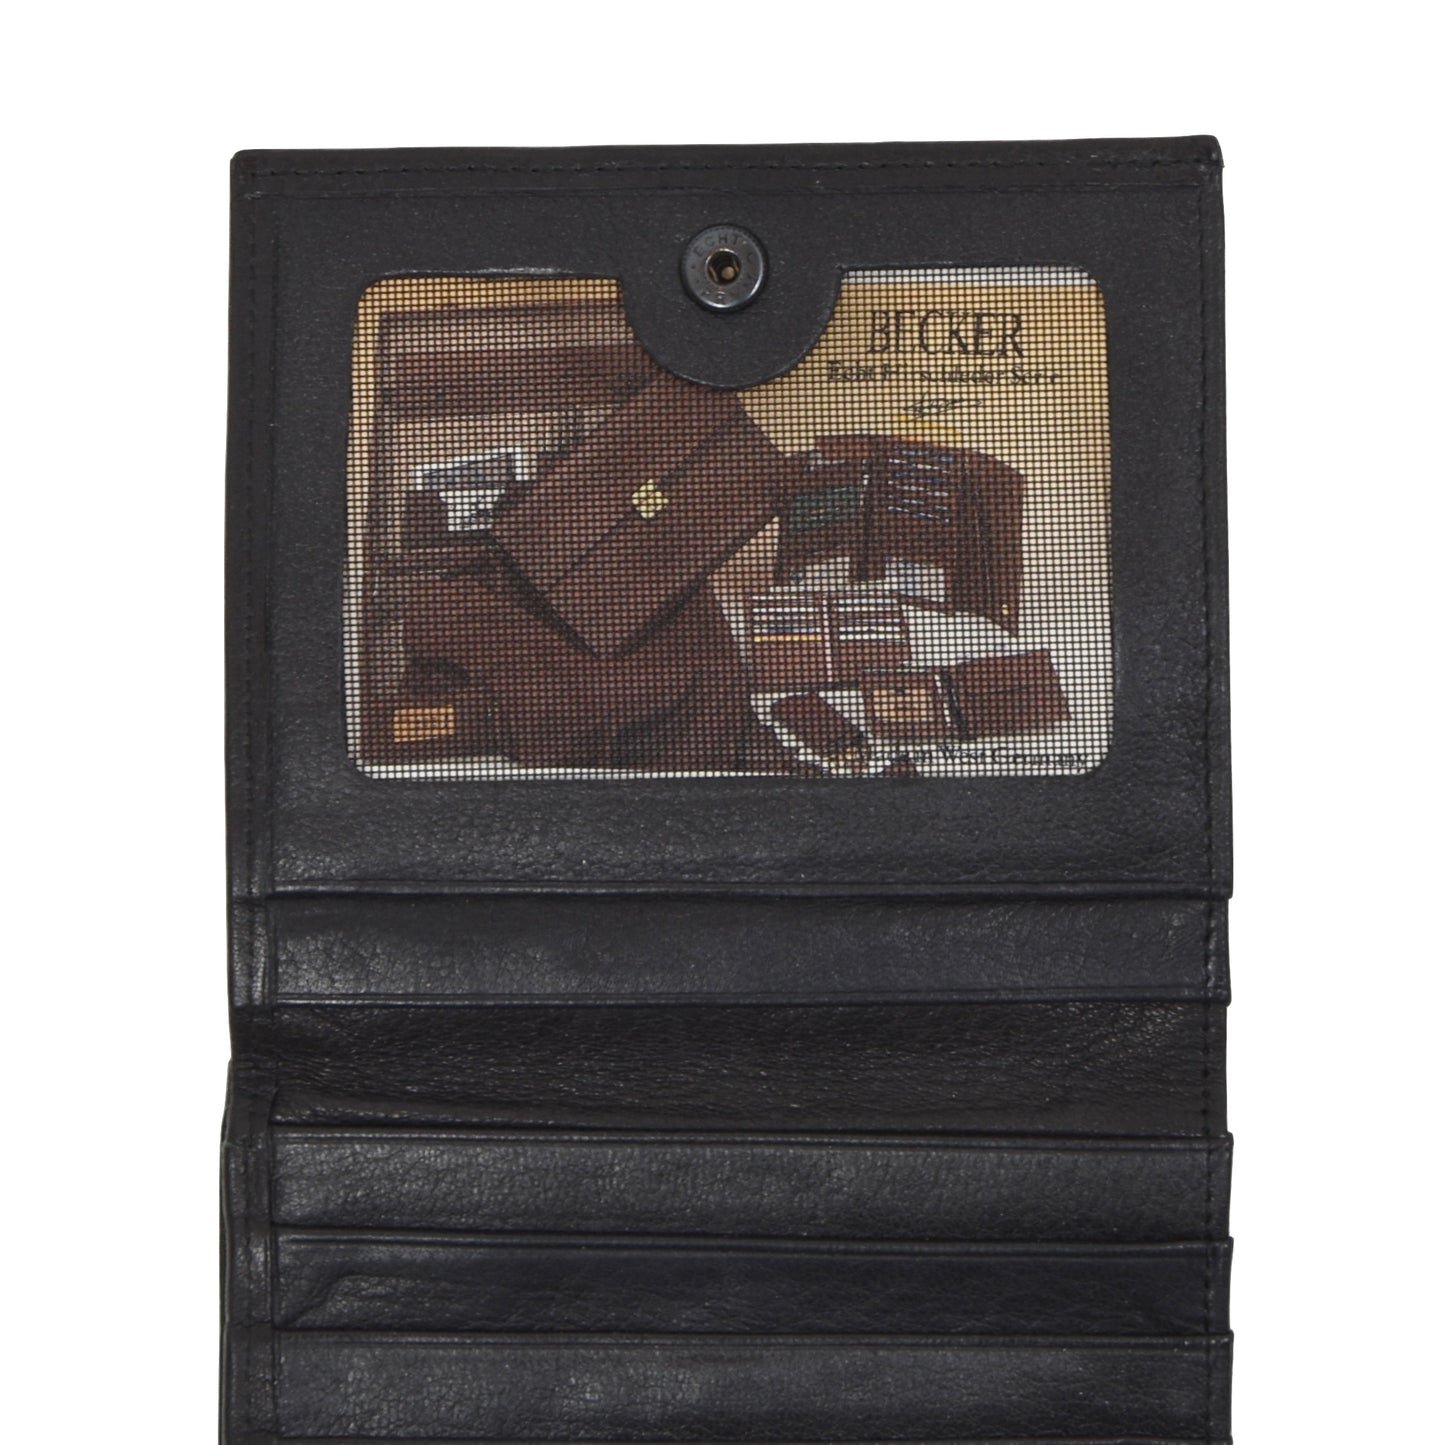 Becker Handmade Deerskin Wallet - Black